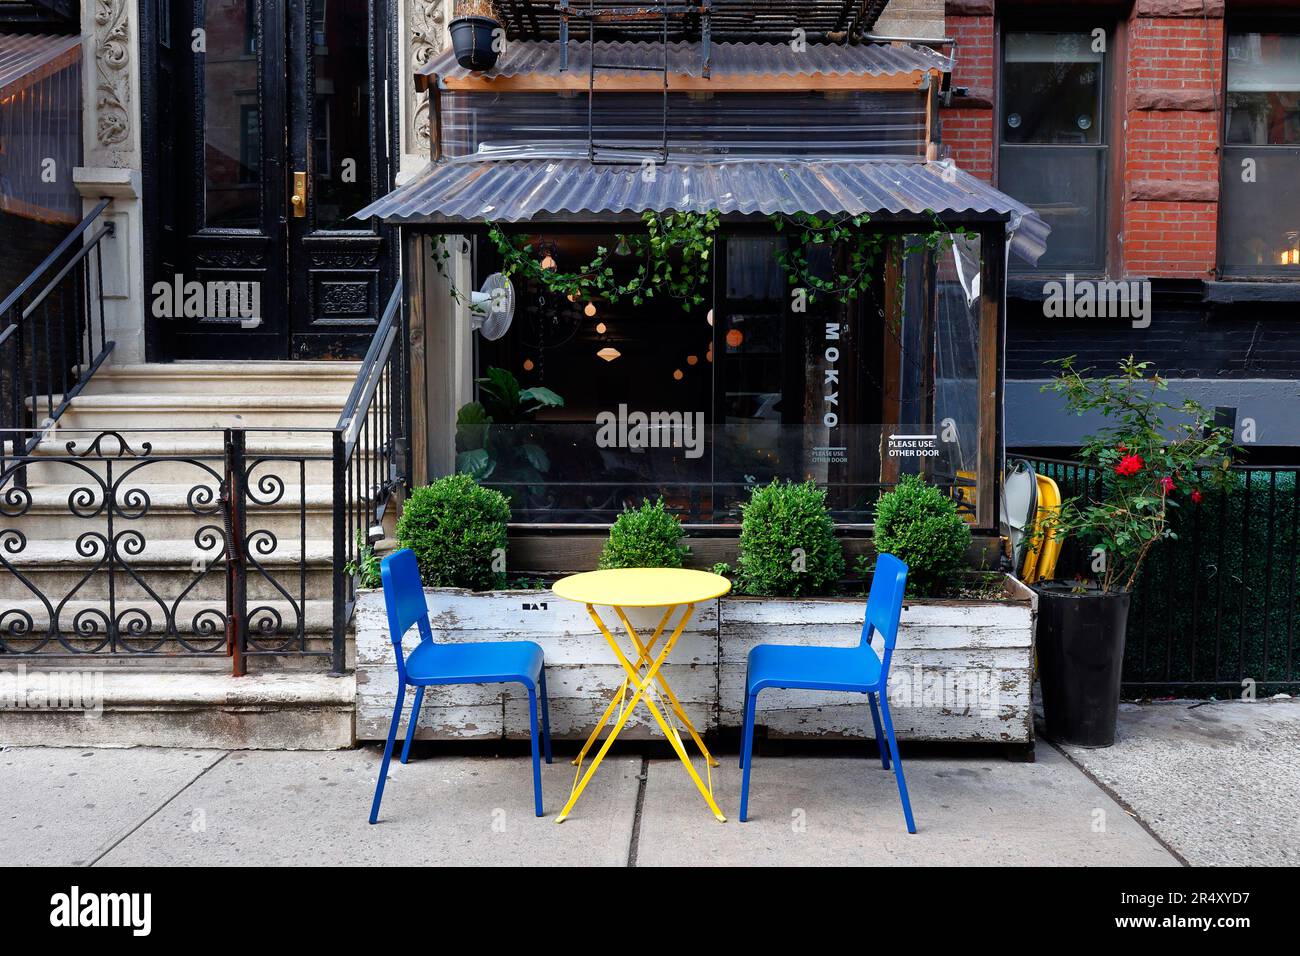 Mokyo 목요, 109 St Marks Pl., New York, NYC, Foto eines koreanischen Restaurants mit kleinen Gerichten im East Village von Manhattan. Stockfoto